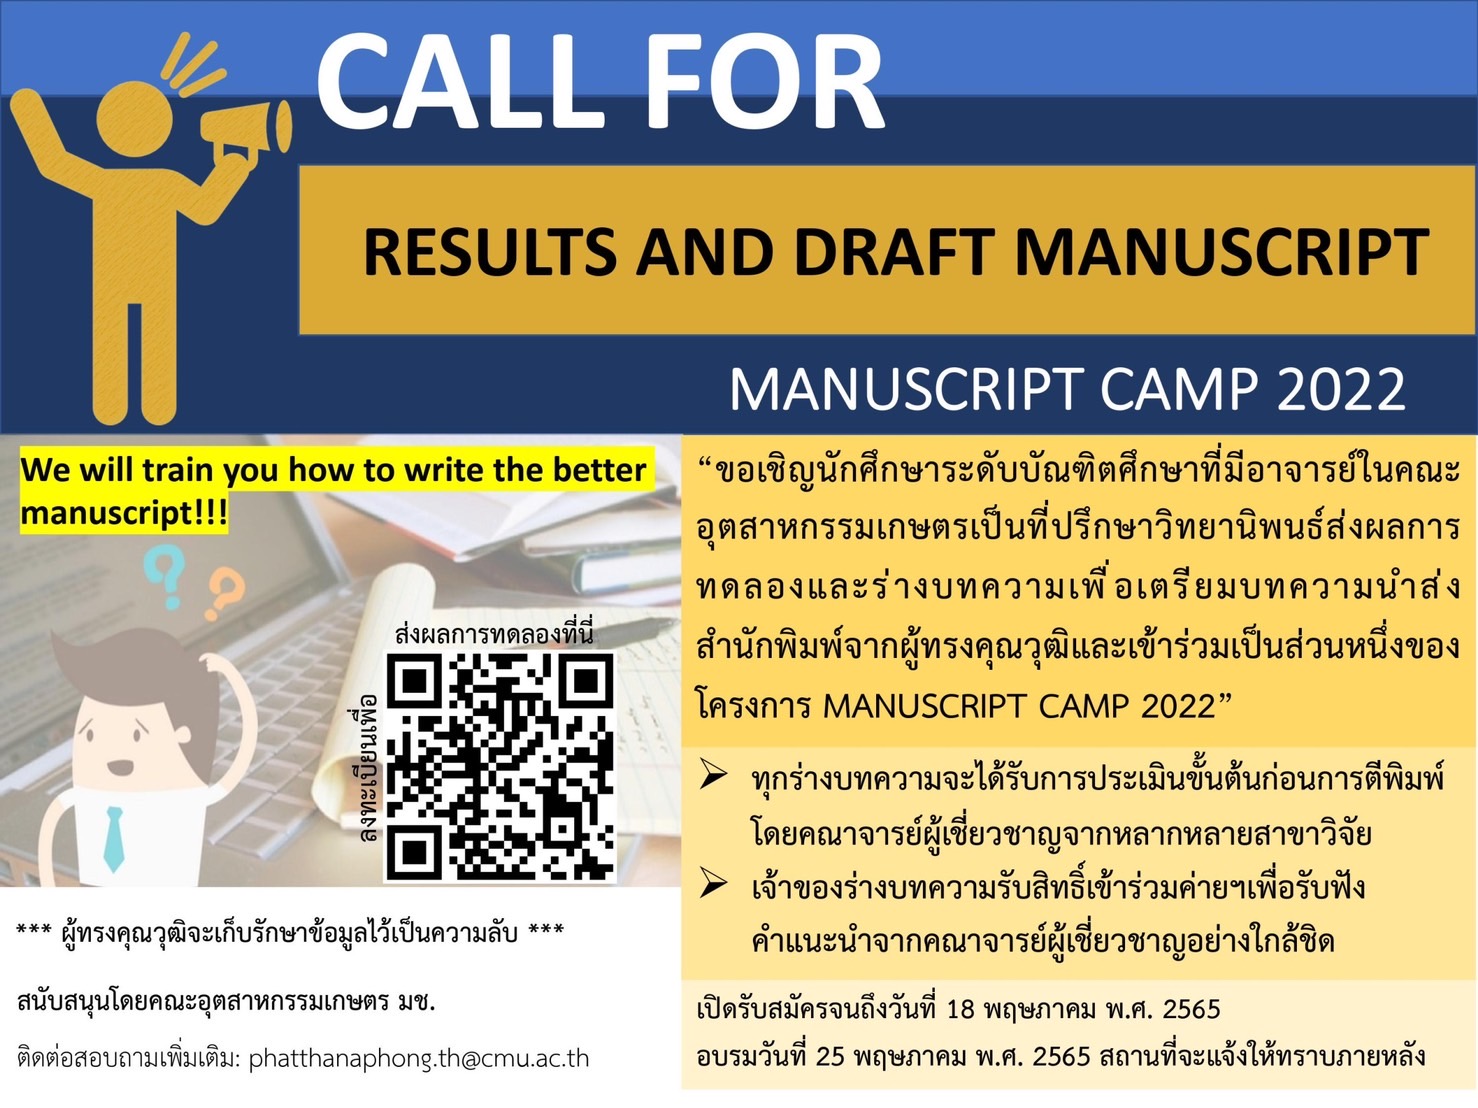 โครงการ Manuscript Camp 2022